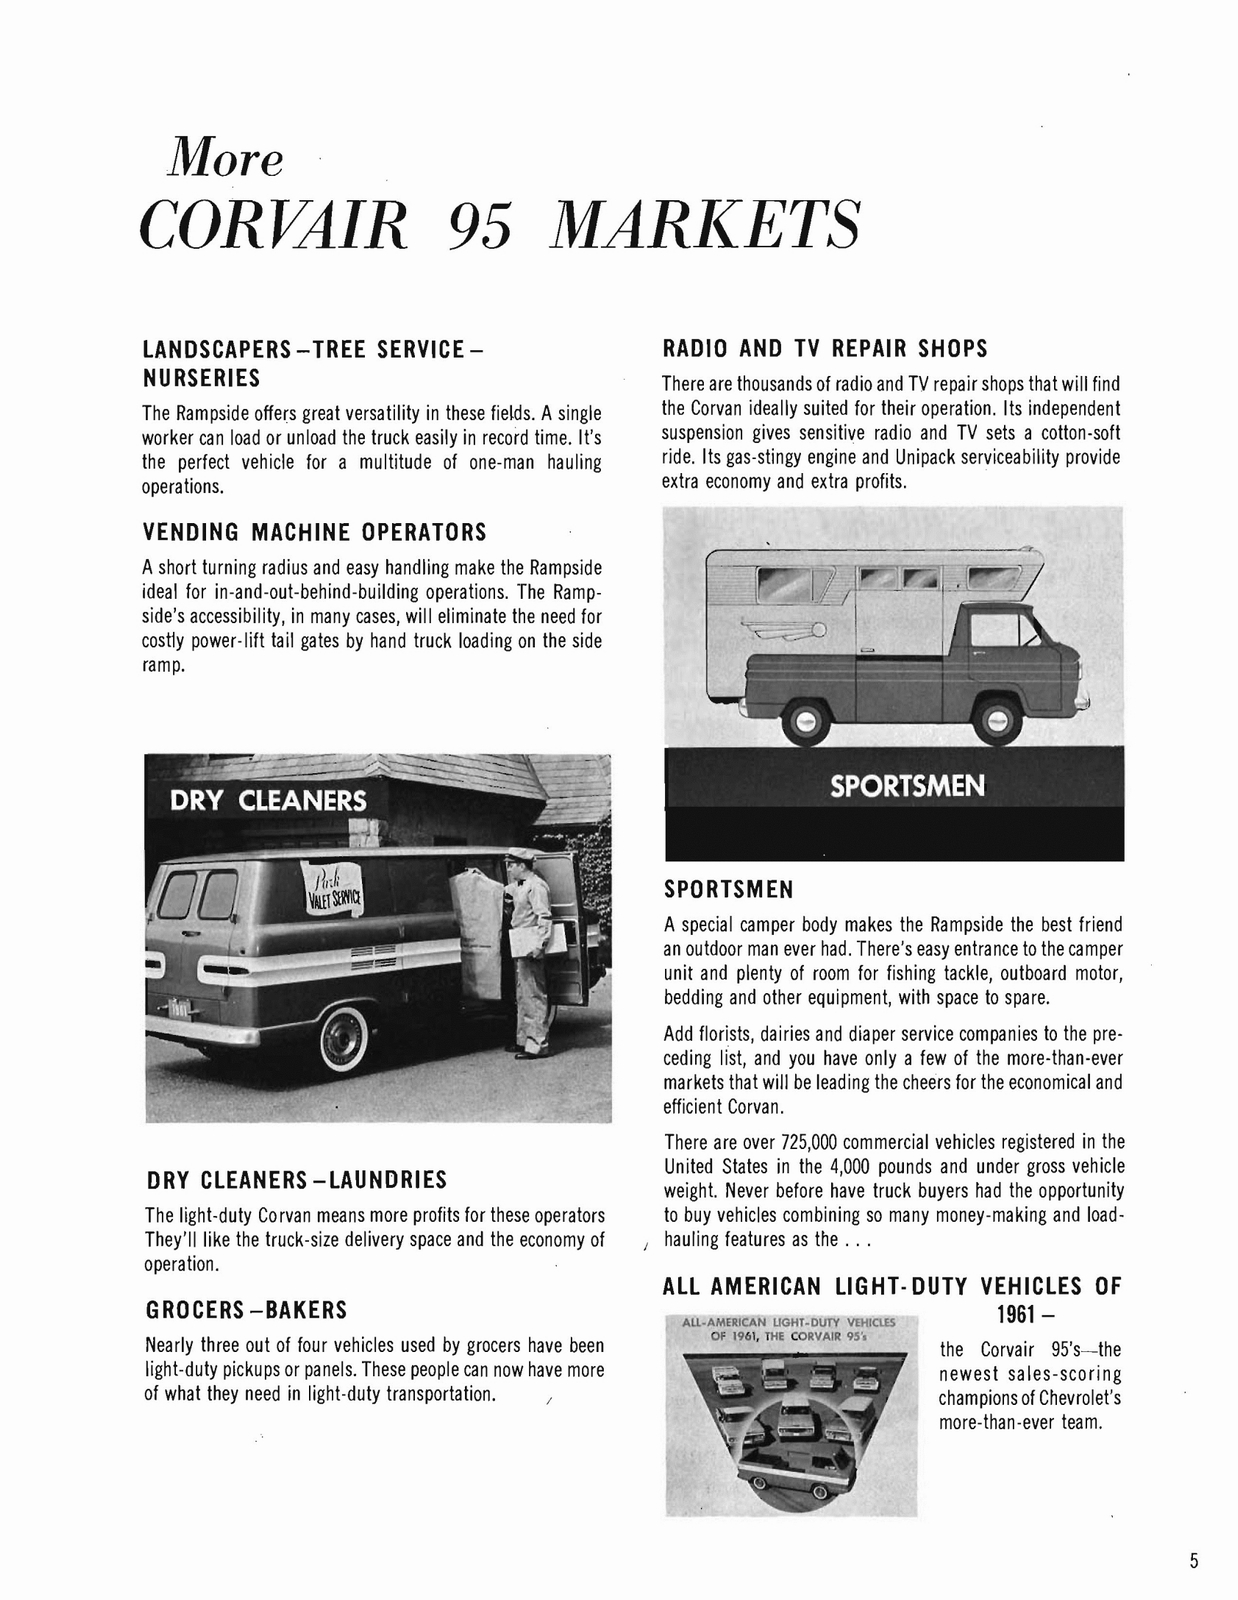 n_1961 Chevrolet Trucks Booklet-05.jpg